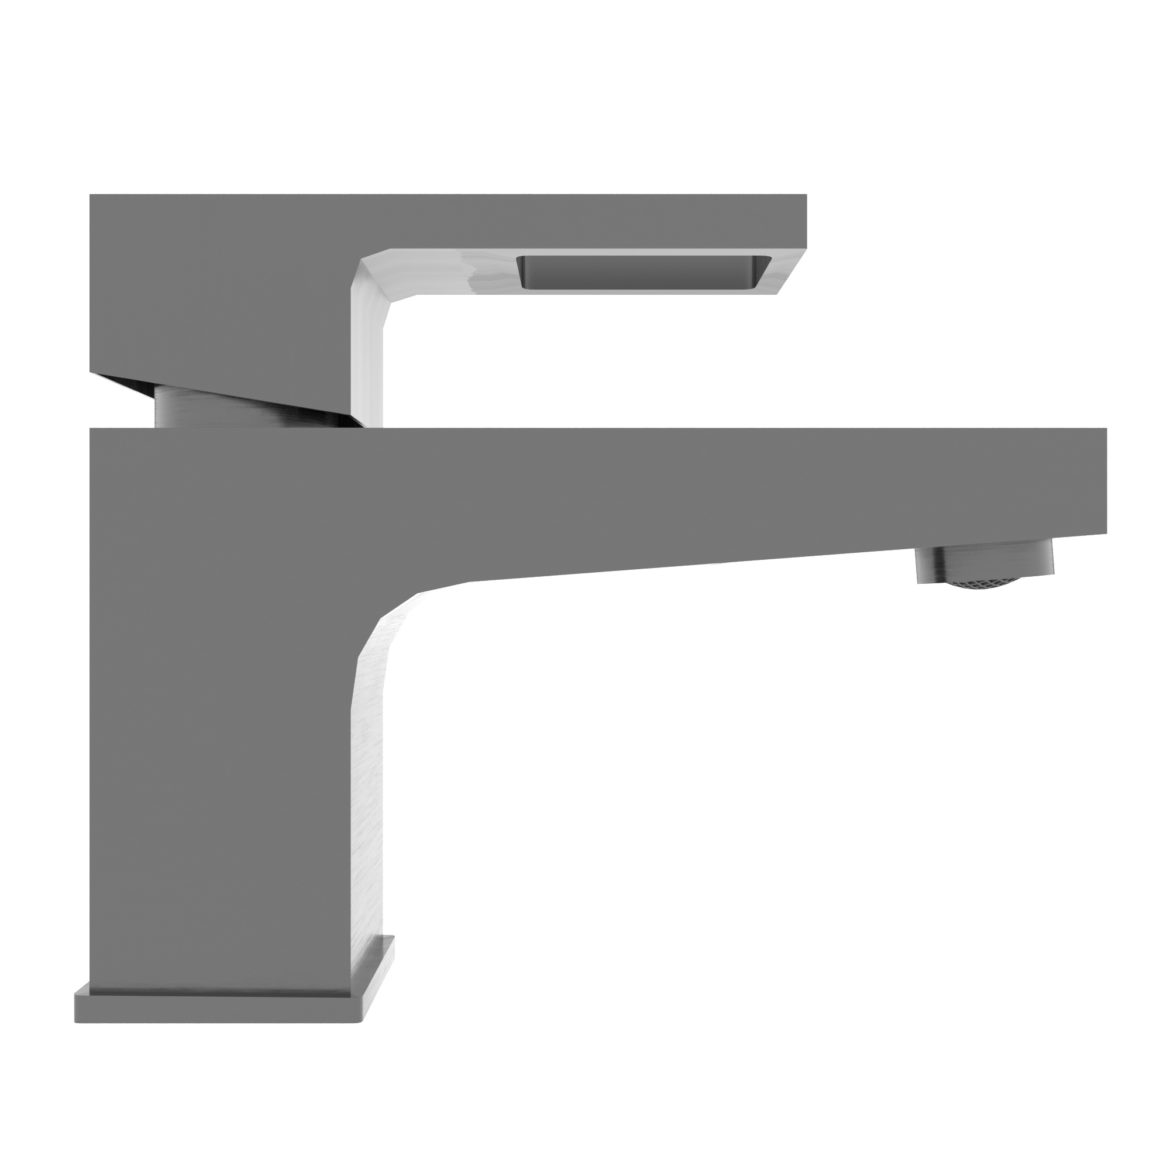  <a class="continue" href="https://www.flatpyramid.com/3d-models/furniture-3d-models/boou-low-poly-black-faucet/">Continue Reading<span> Boou low poly black Faucet</span></a>